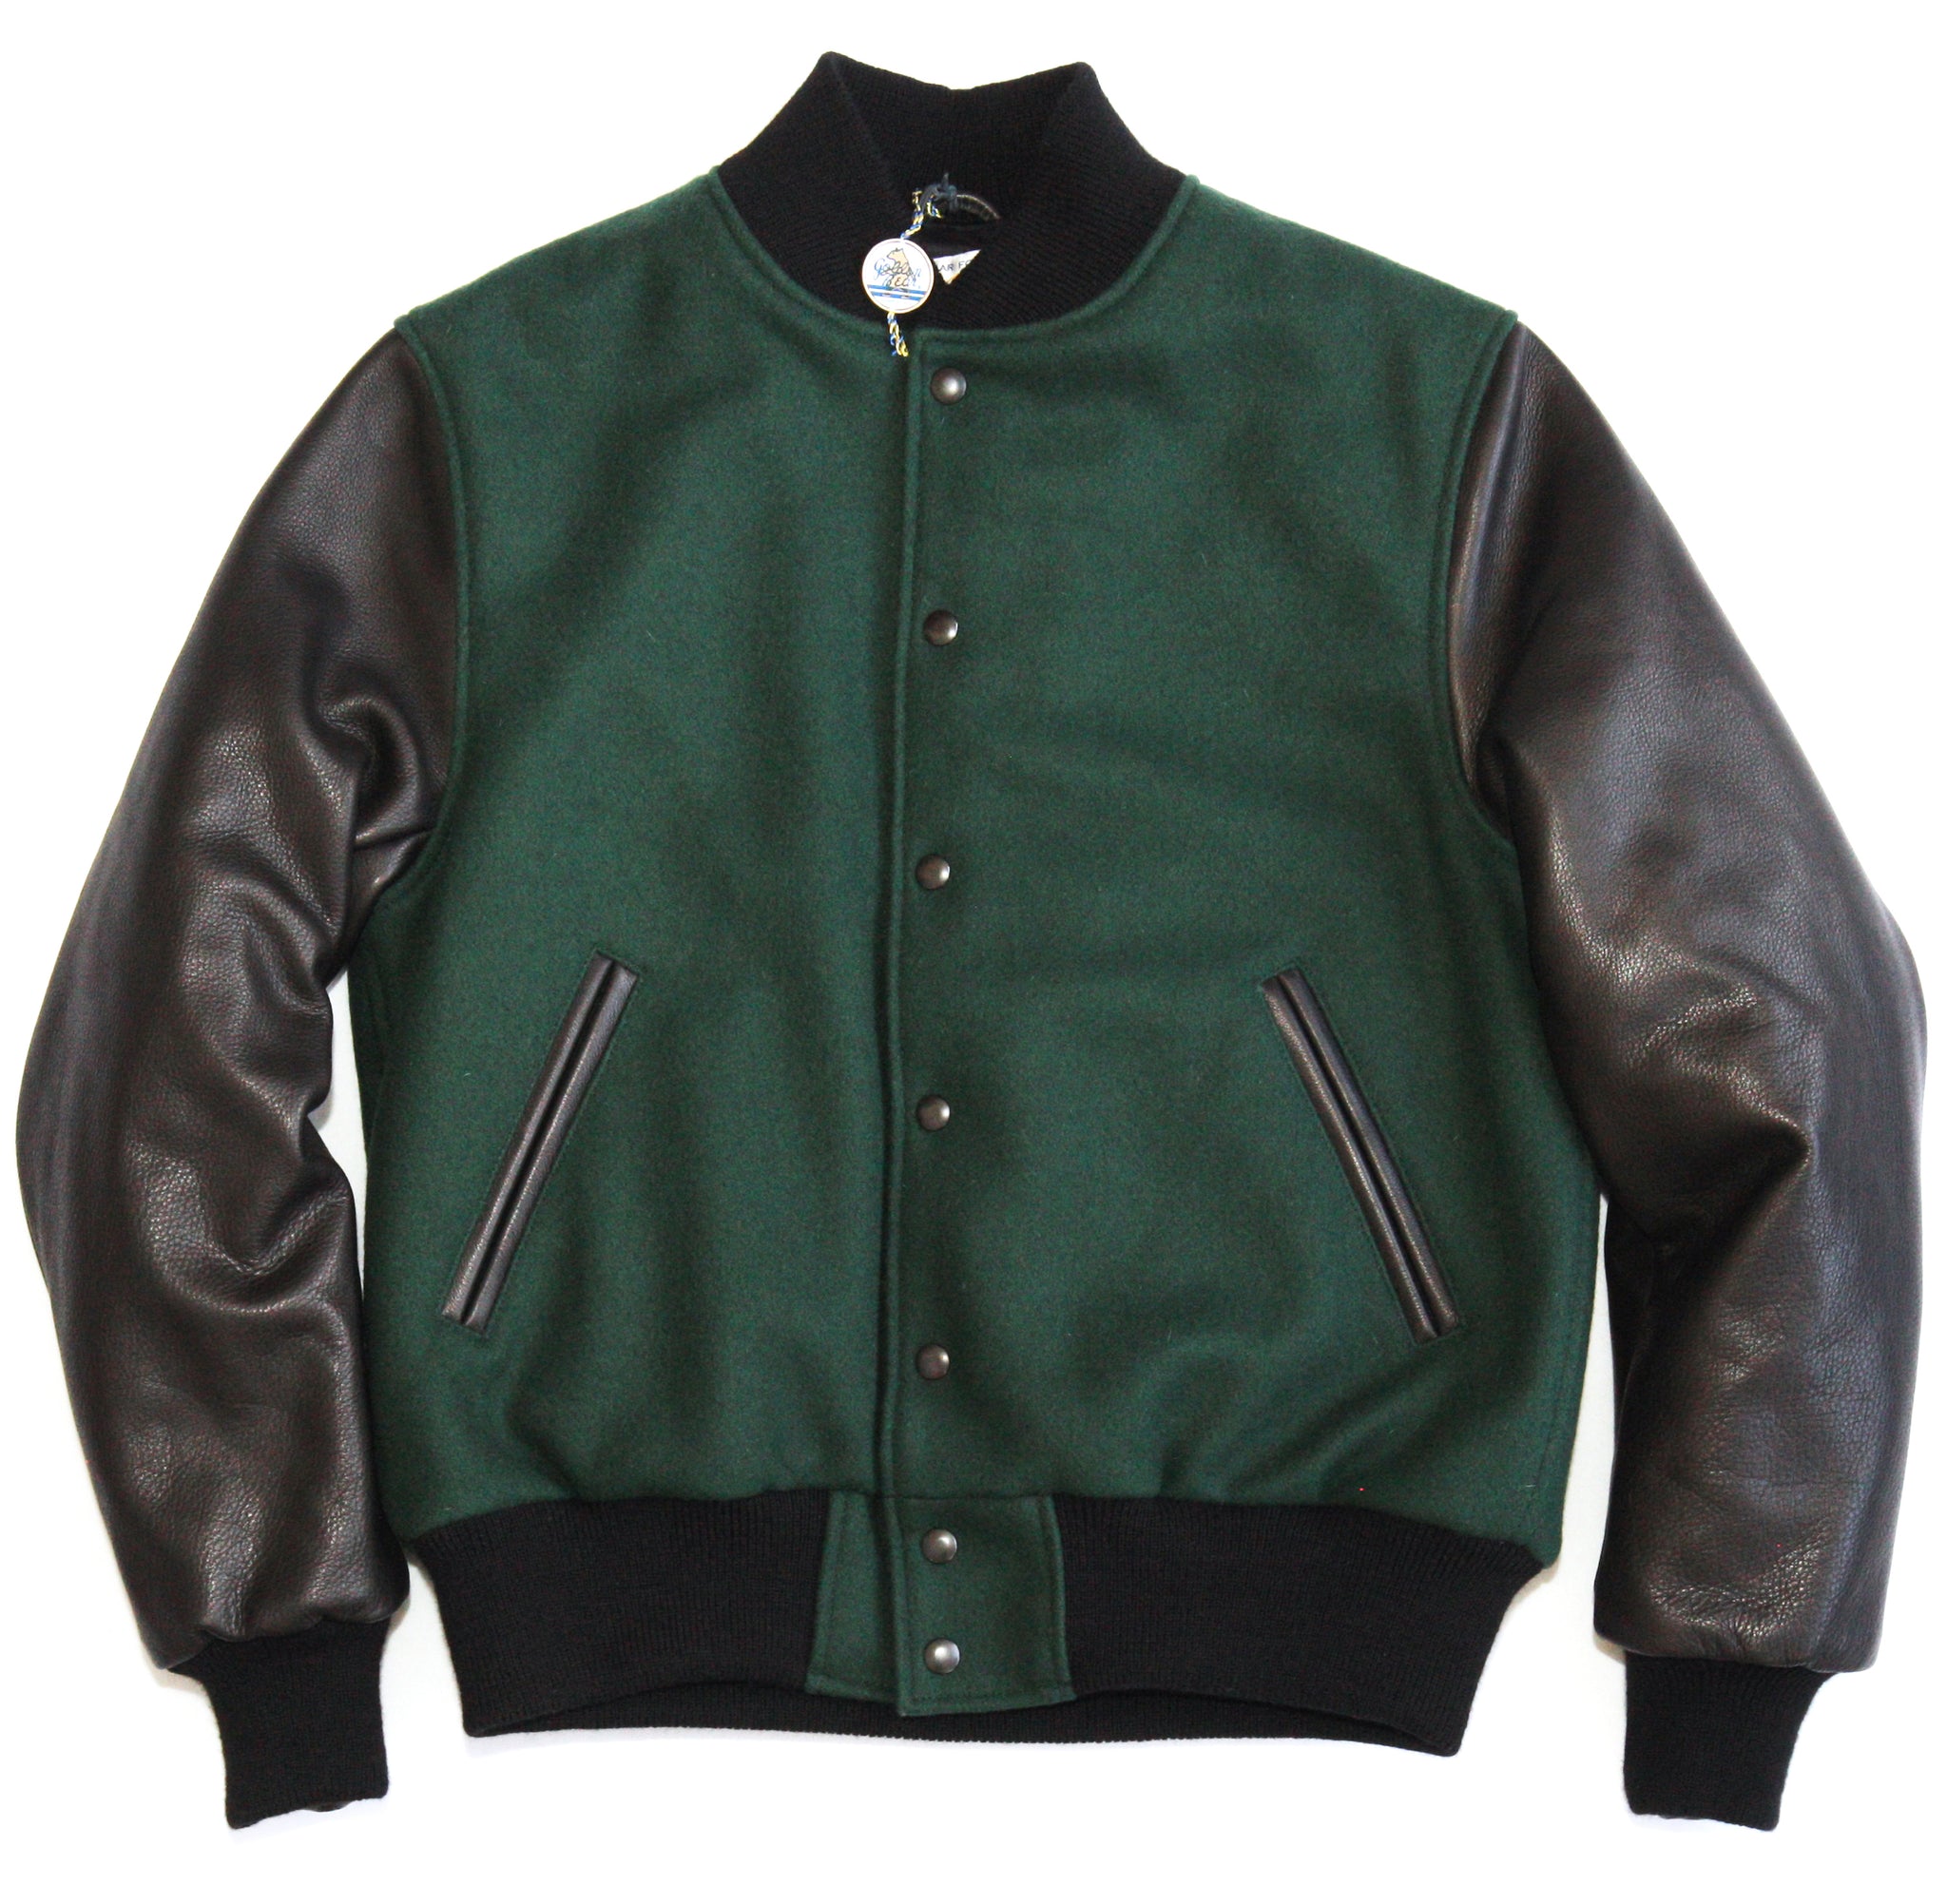 Forest/Black Classic Fit Varsity Jacket - Golden Bear Sportswear 